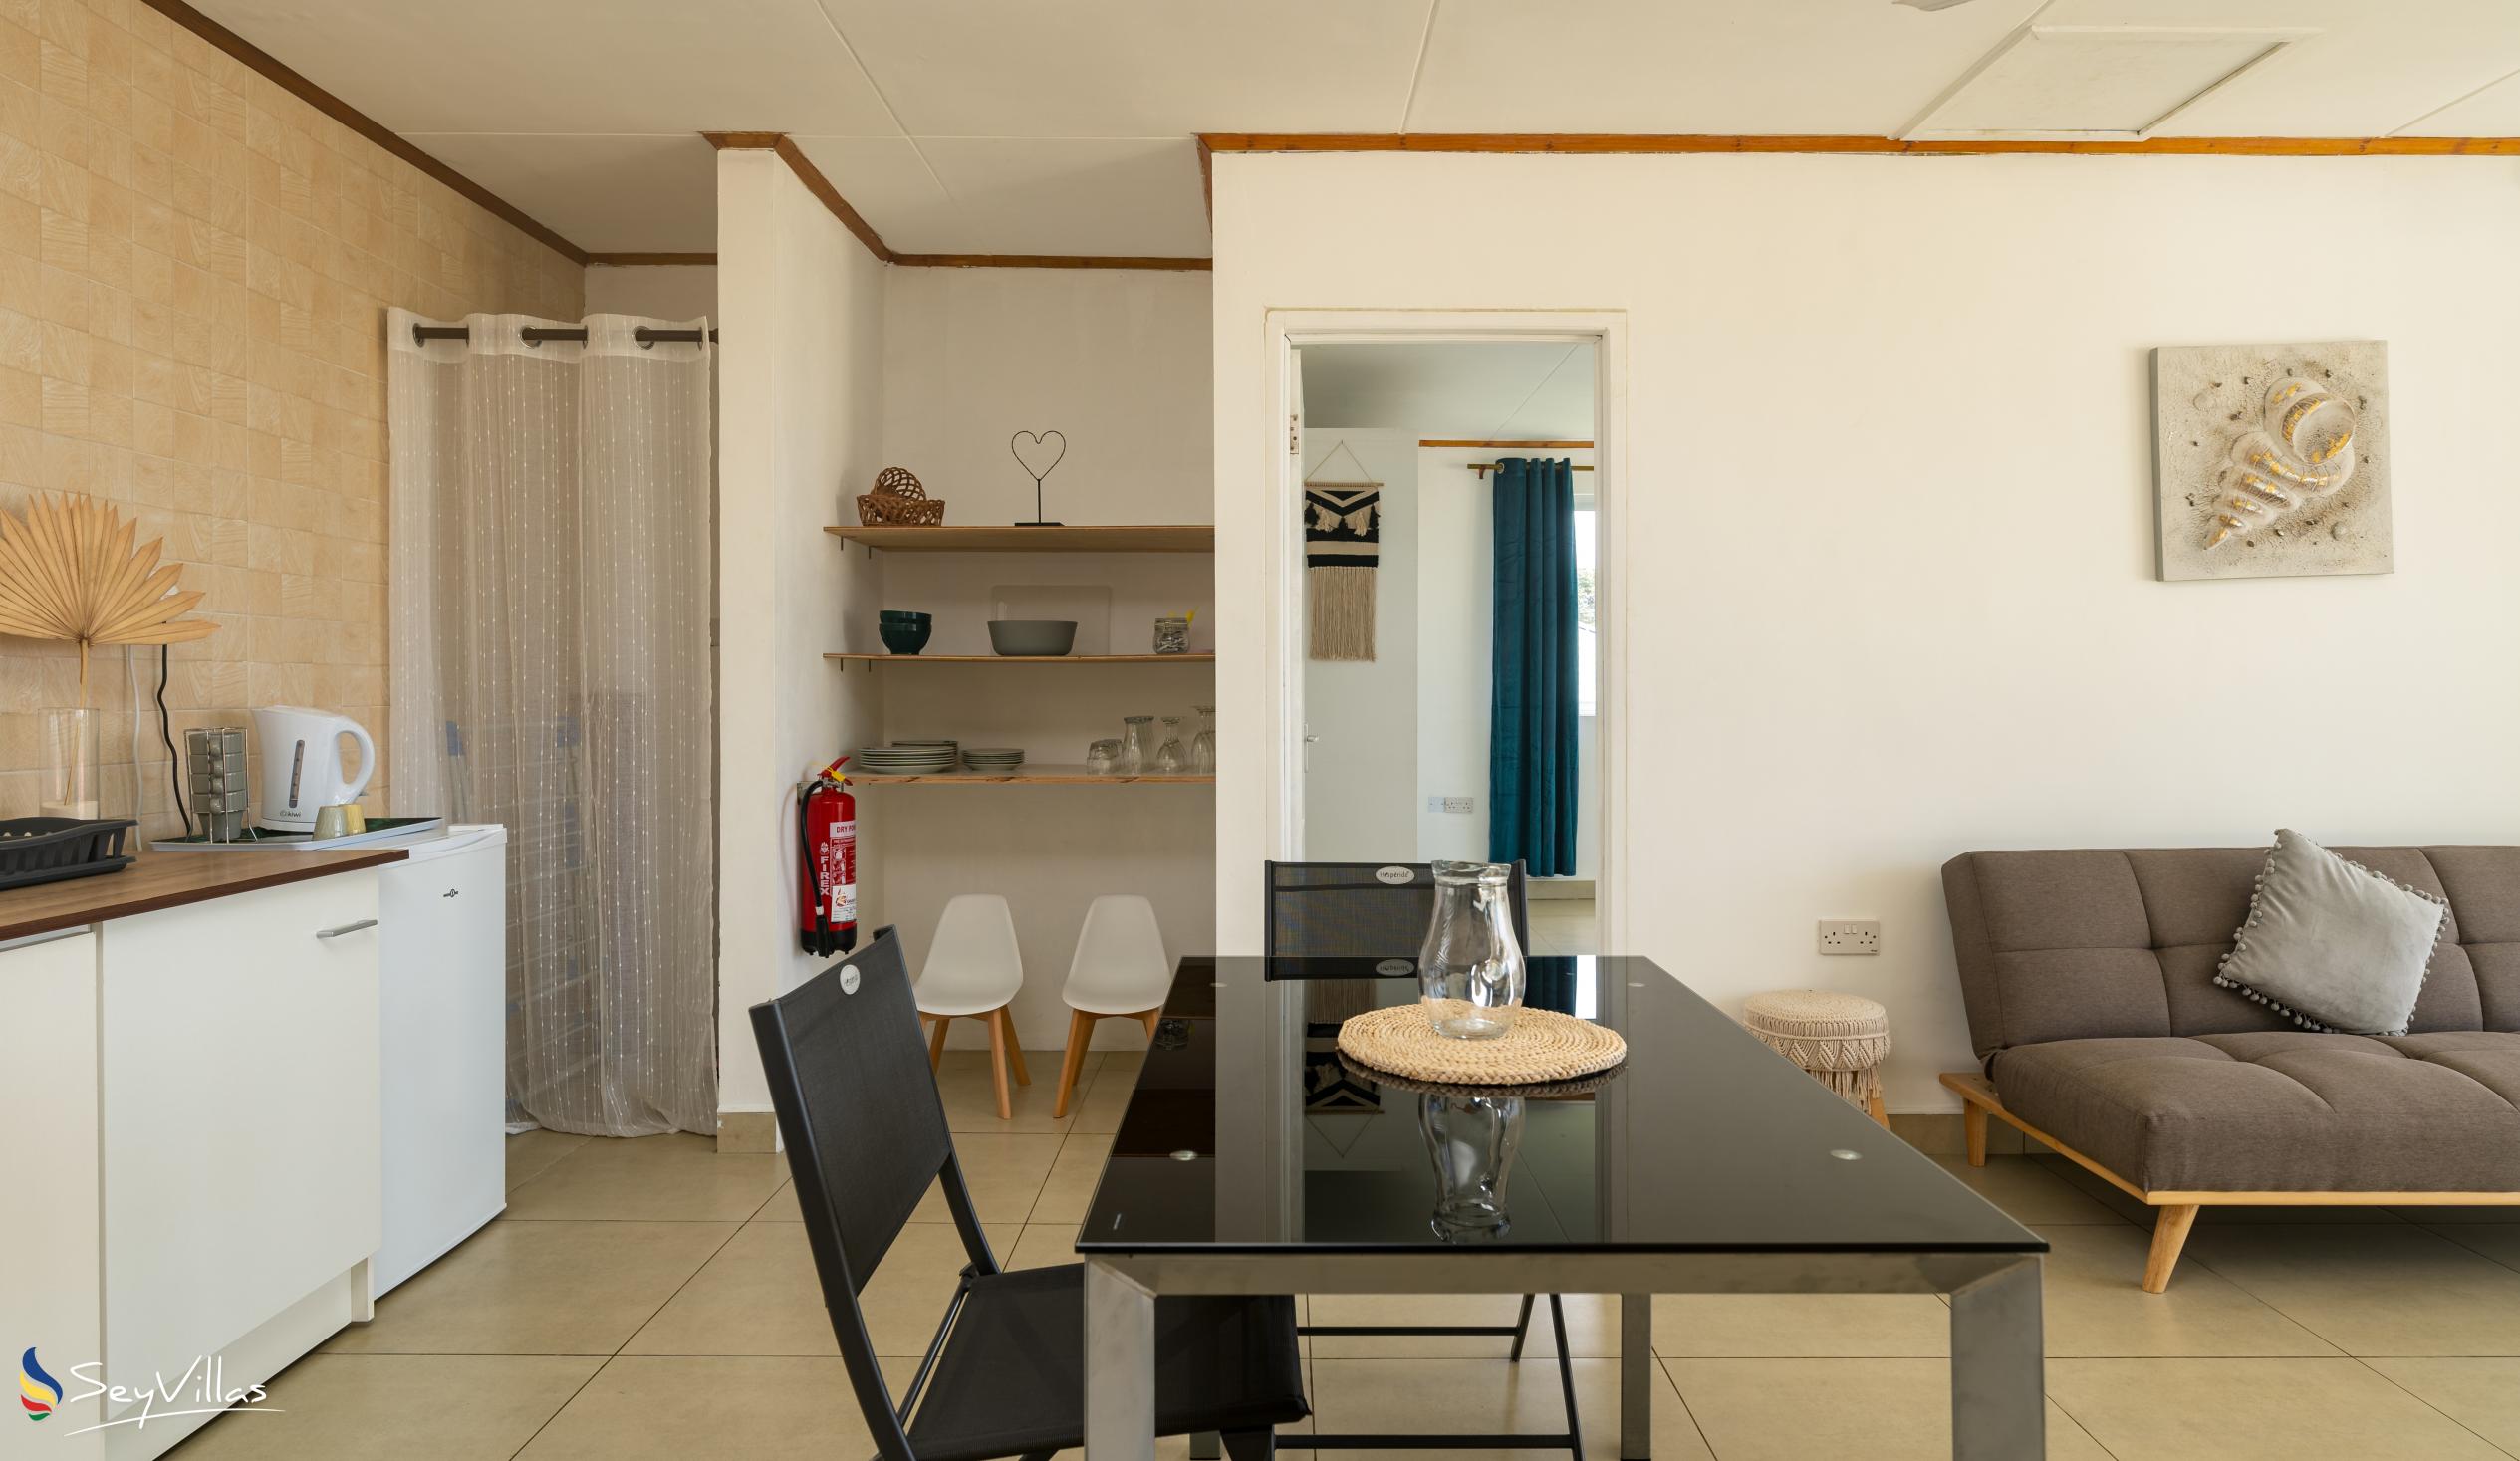 Photo 75: Cap Confort - 1-Bedroom Apartment - Mahé (Seychelles)